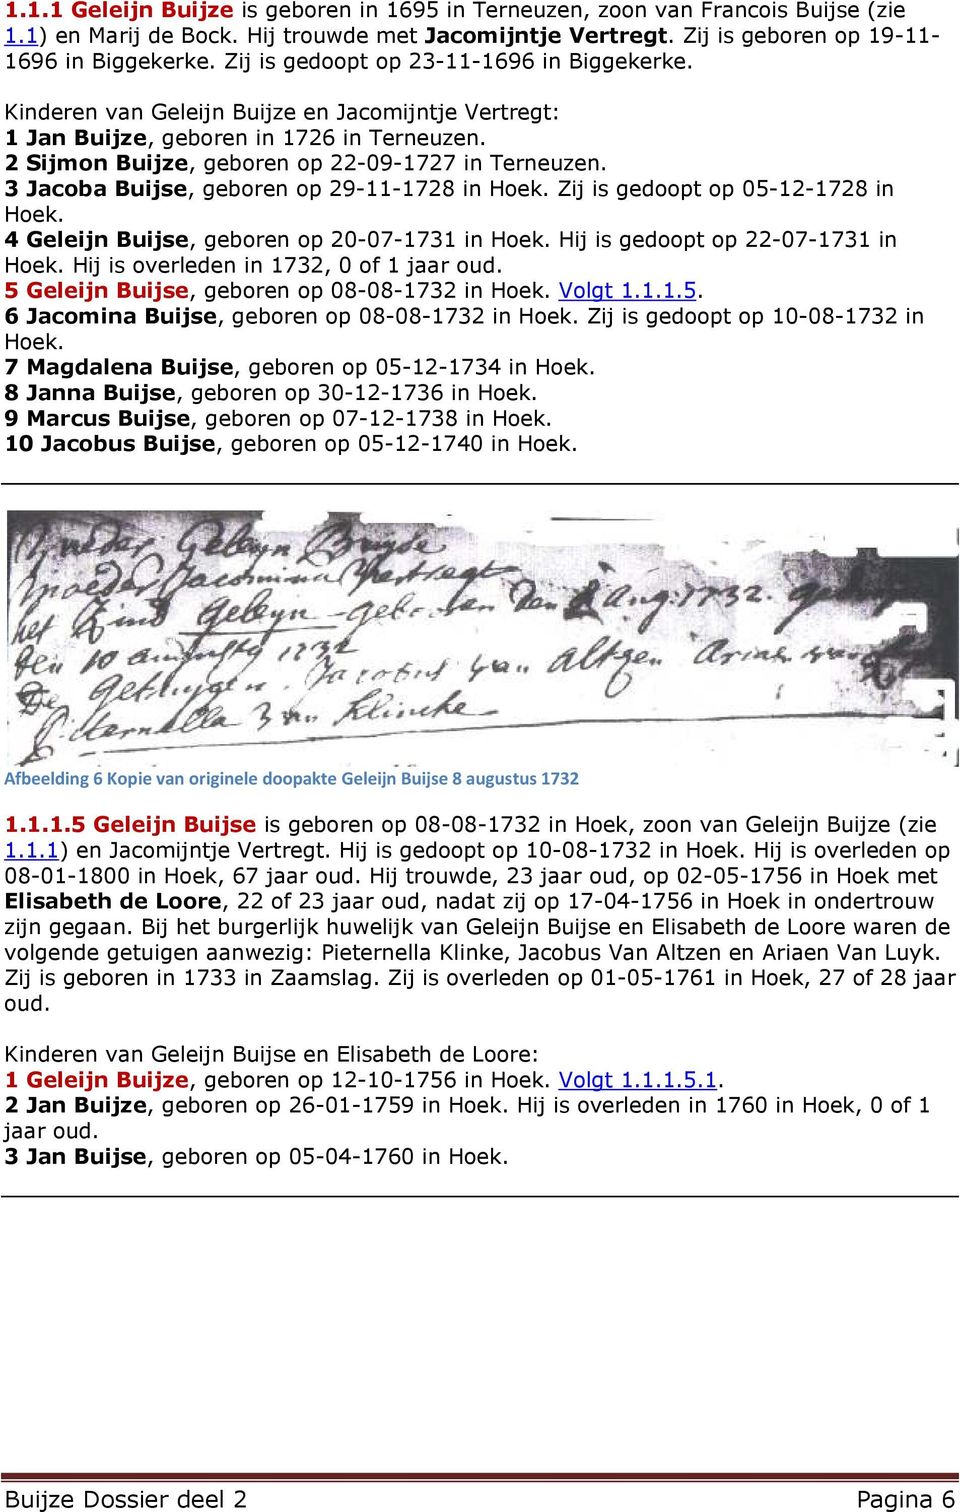 3 Jacoba Buijse, geboren op 29-11-1728 in Hoek. Zij is gedoopt op 05-12-1728 in Hoek. 4 Geleijn Buijse, geboren op 20-07-1731 in Hoek. Hij is gedoopt op 22-07-1731 in Hoek.